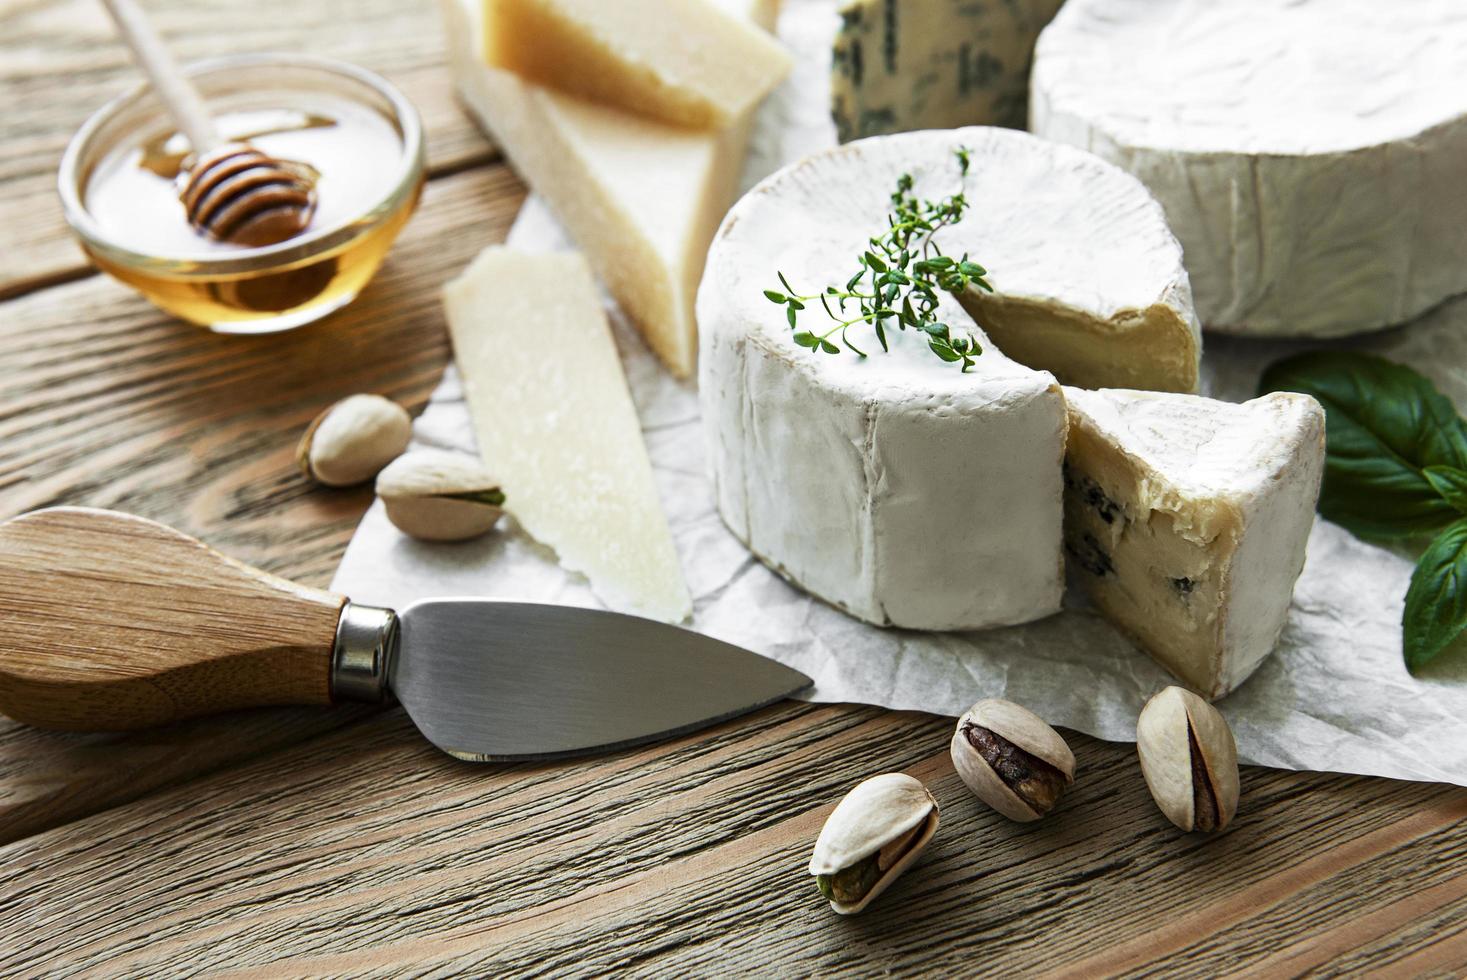 olika typer av ost, ädelost, bris och camembert på ett träbord foto